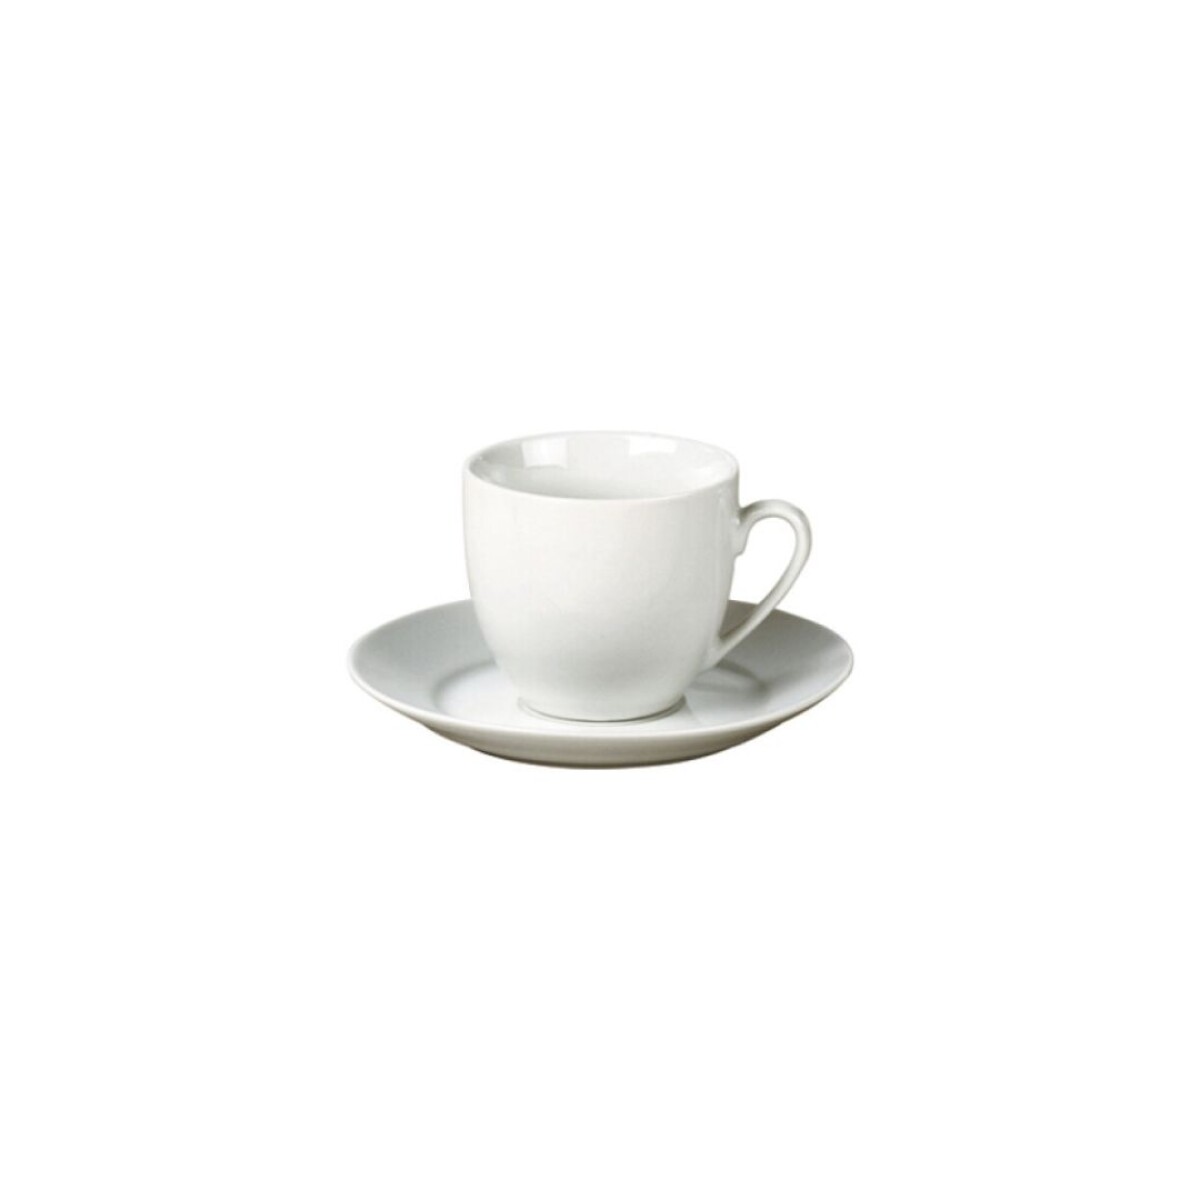 Taza Cafe con plato Ceramica Blanca 70 ml - 000 